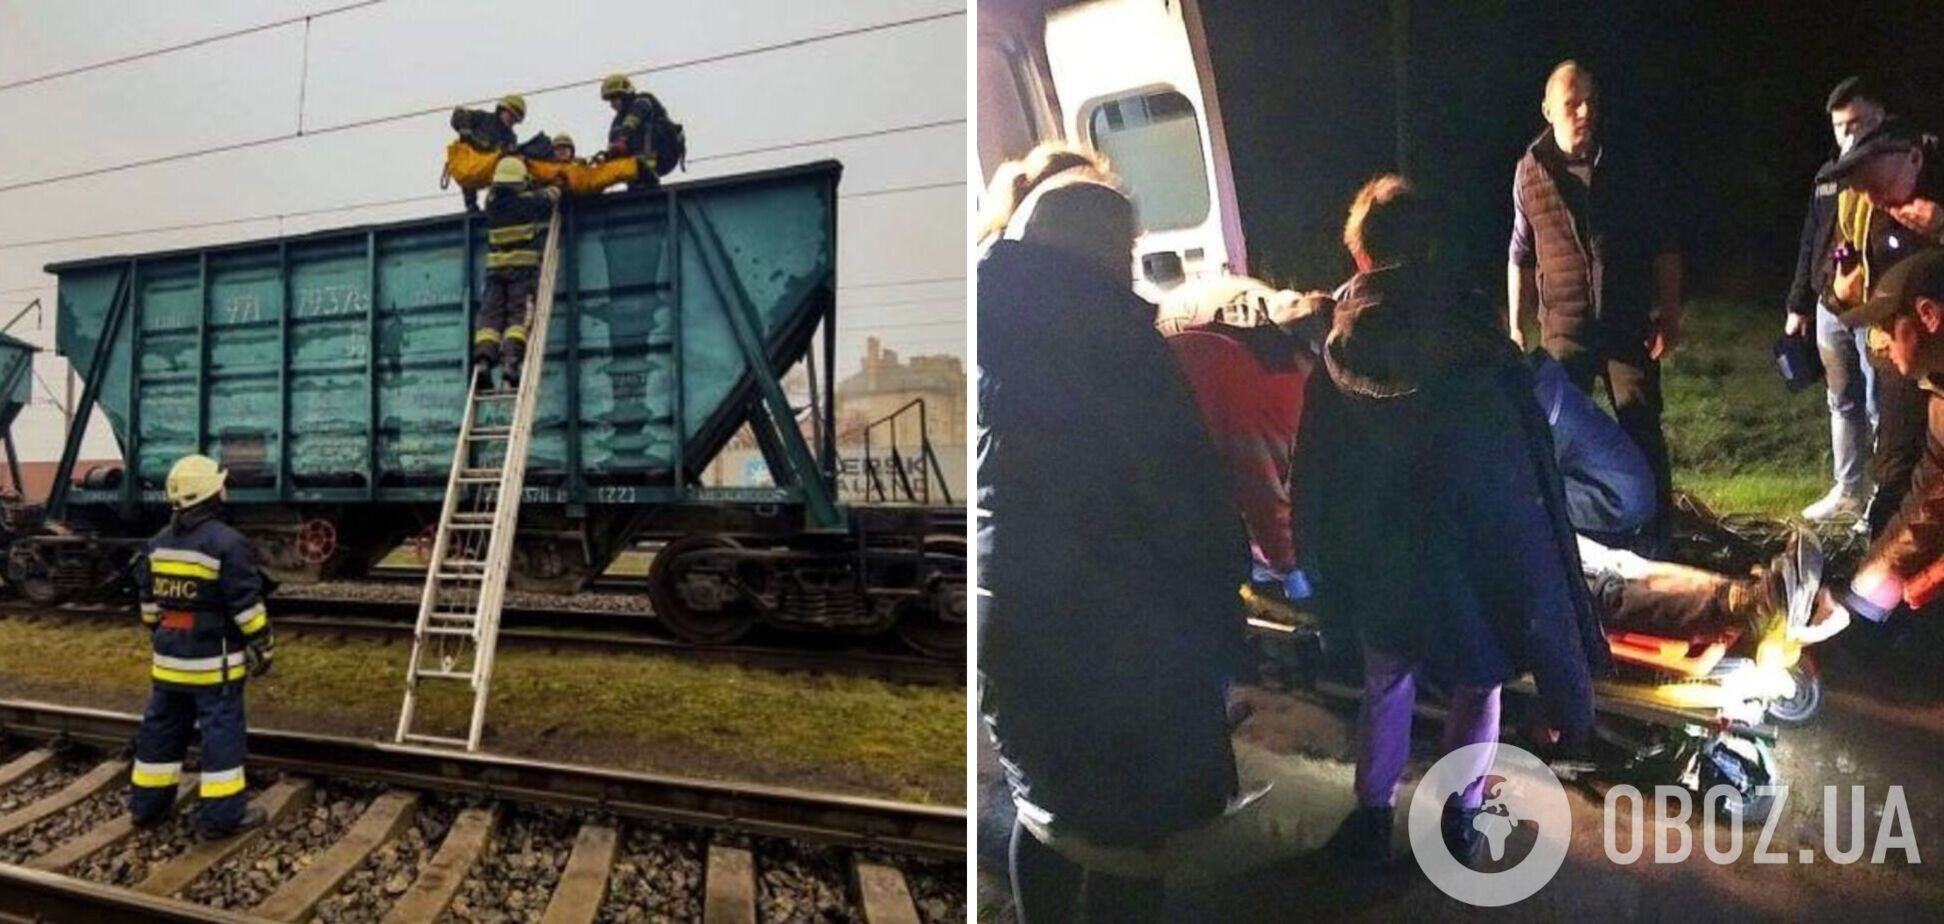 Хотів зробити селфі на залізничному вагоні: на Вінниччині 14-річний хлопець отримав 70% опіків тіла